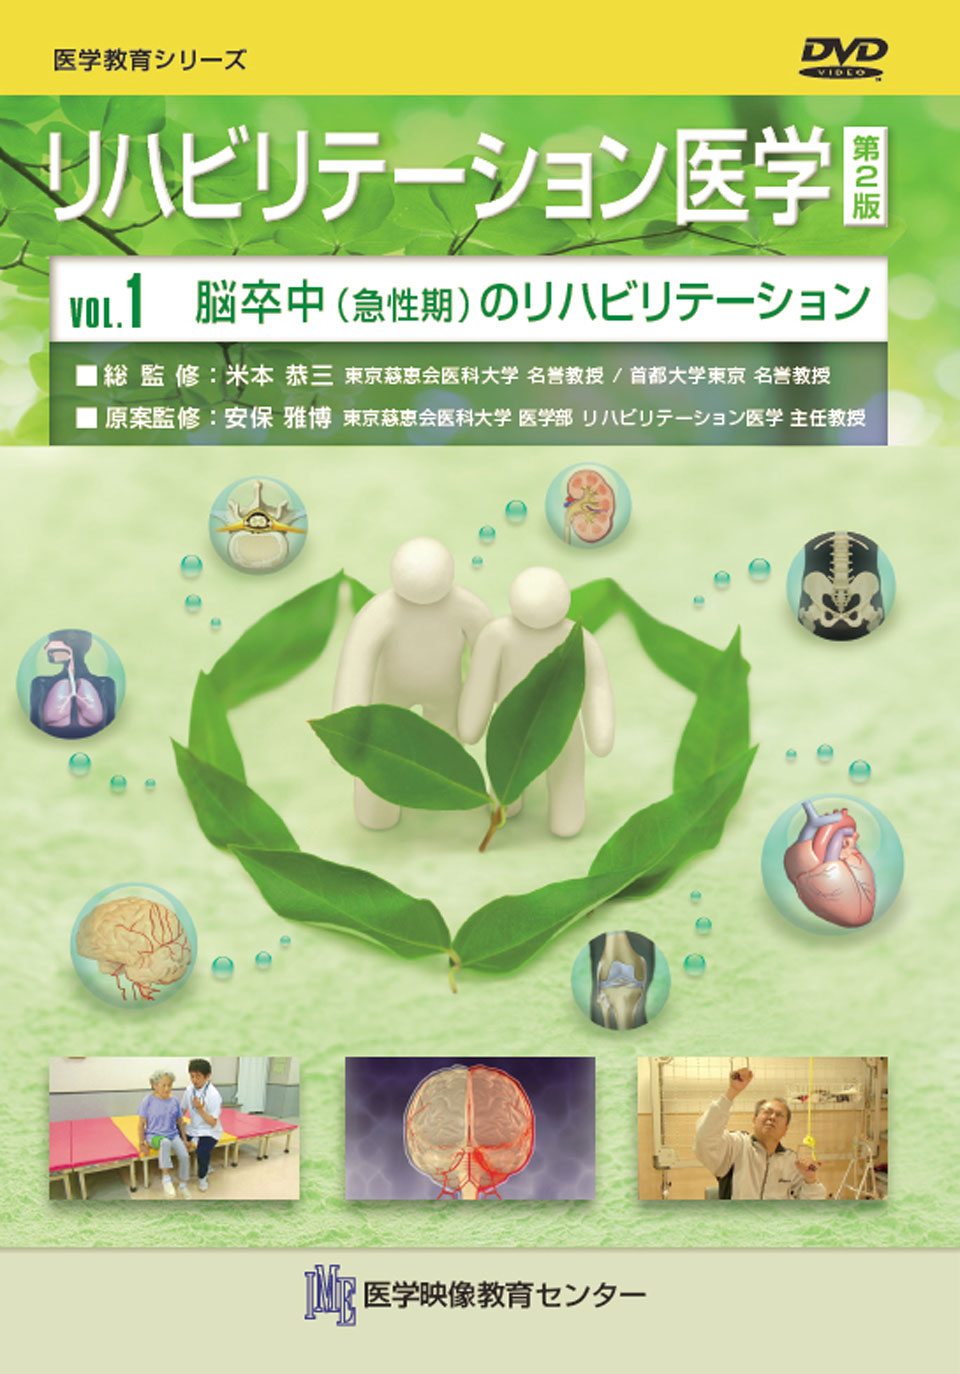 【全巻セット】リハビリテーション医学 第2版DVD全20巻